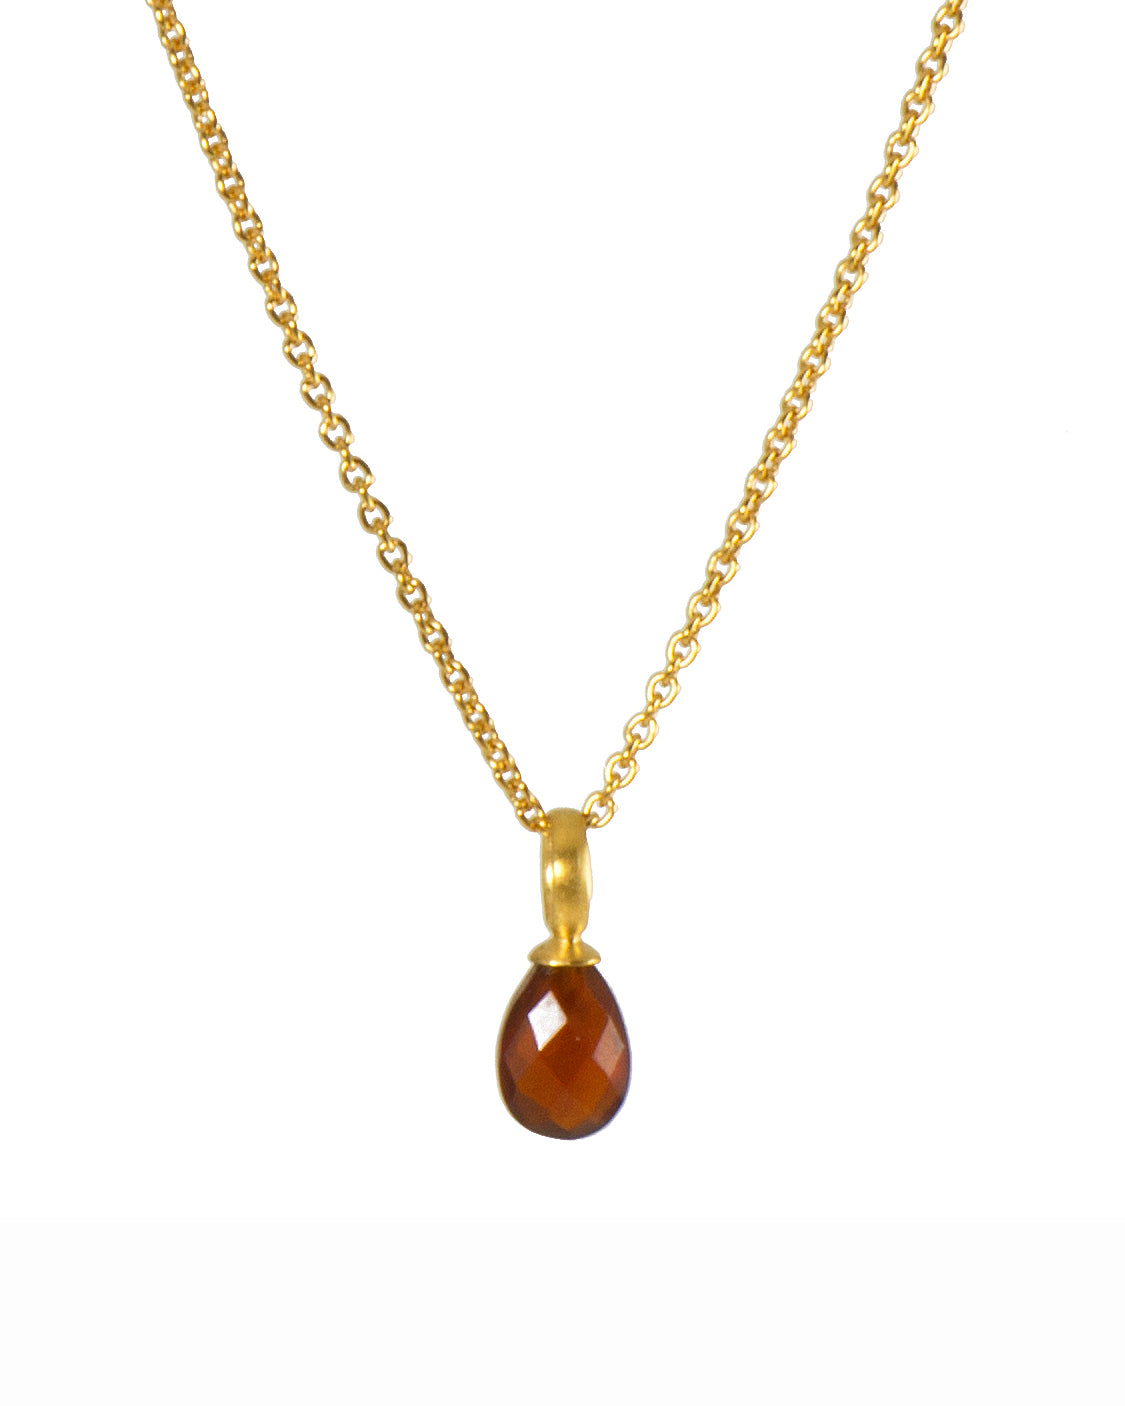 Garnet Faceted Drop Necklace Fair Trade 24K Gold Vermeil